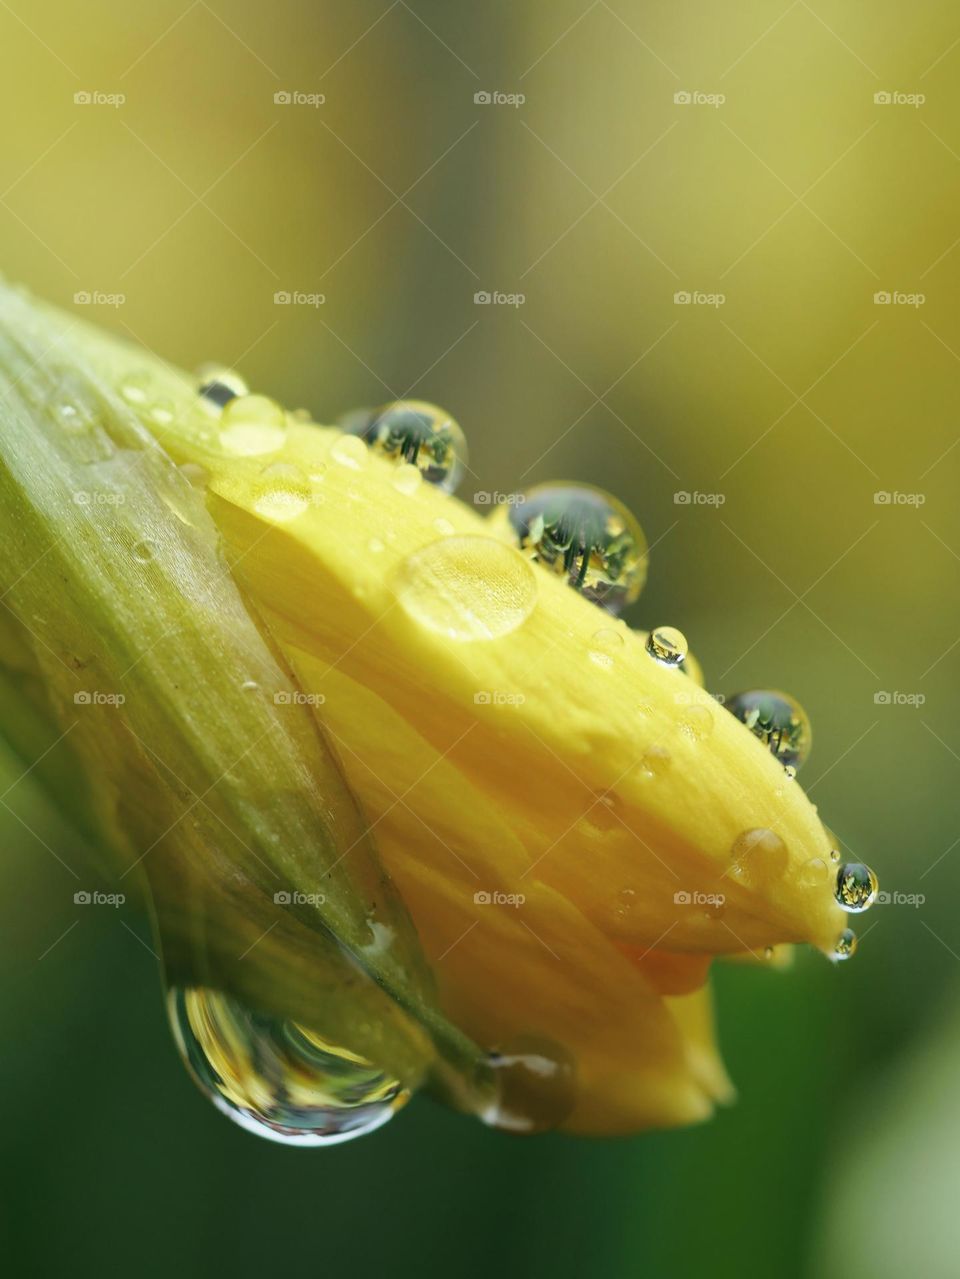 Wet daffodil bud